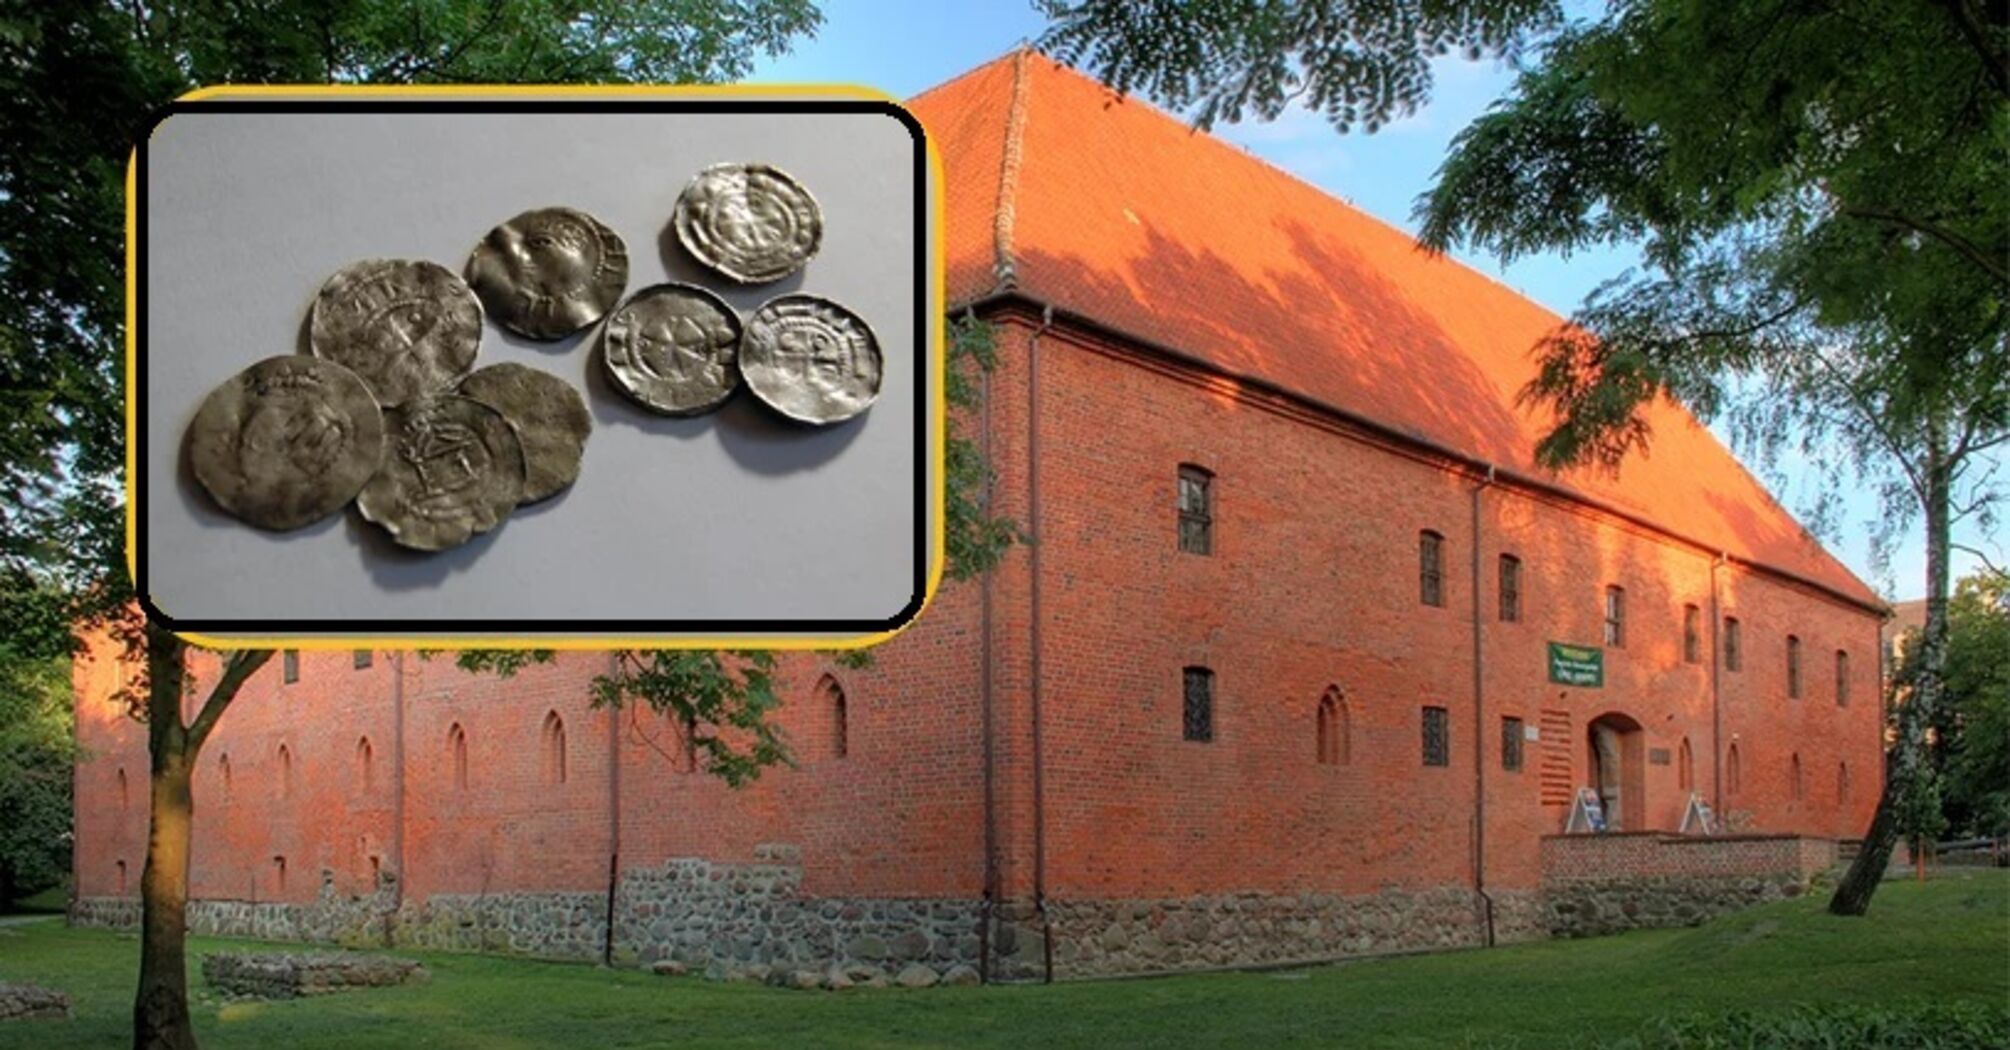 Редкостный клад средневековых монет XI века нашел металлоискатель в Польше: фото